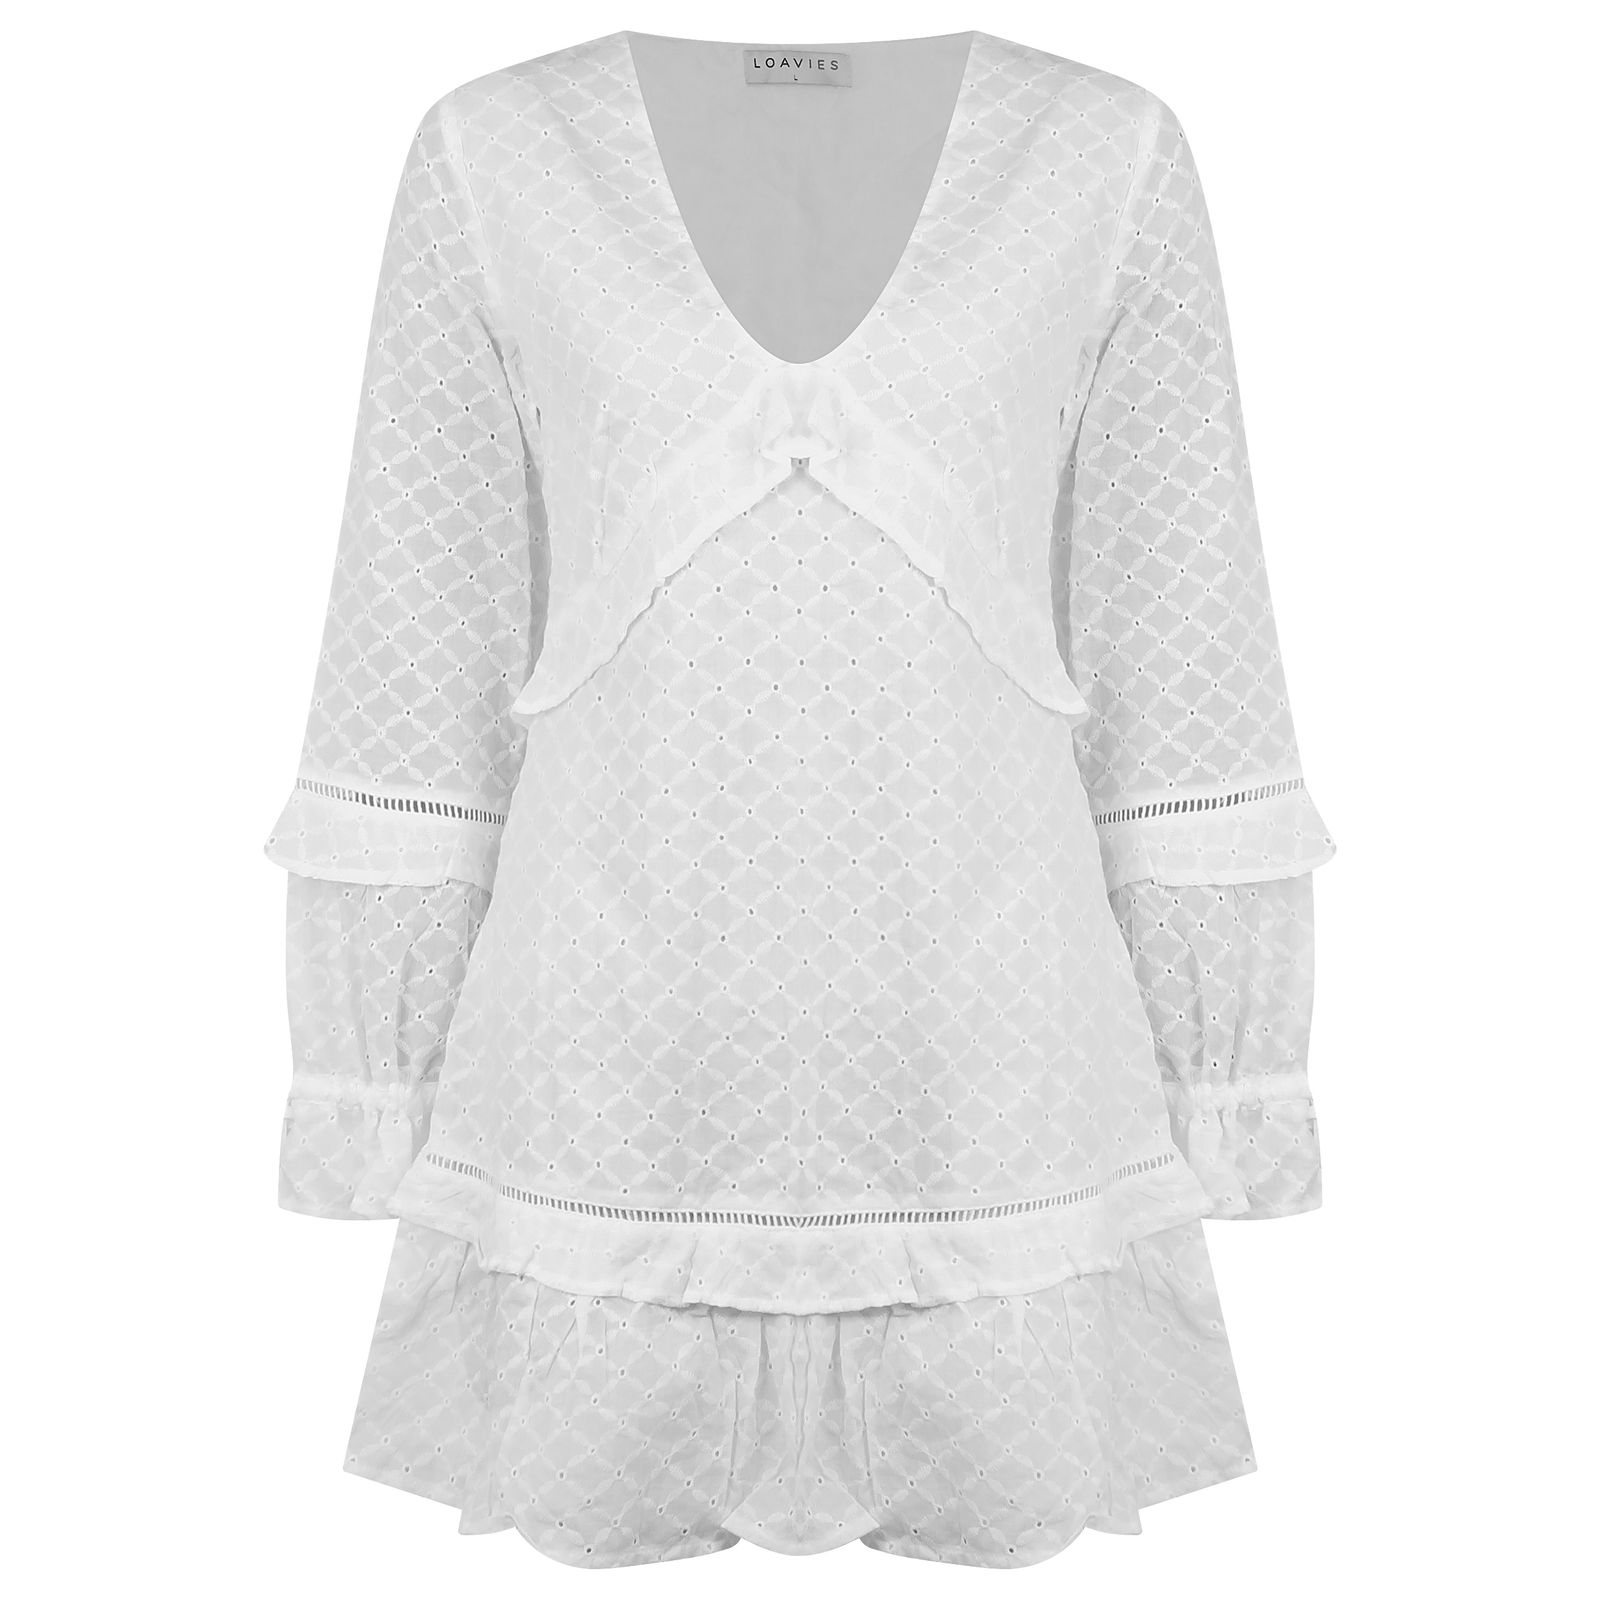 پیراهن زنانه لوییز مدل خامه دوزی RSH-LOAV83186 -  - 2